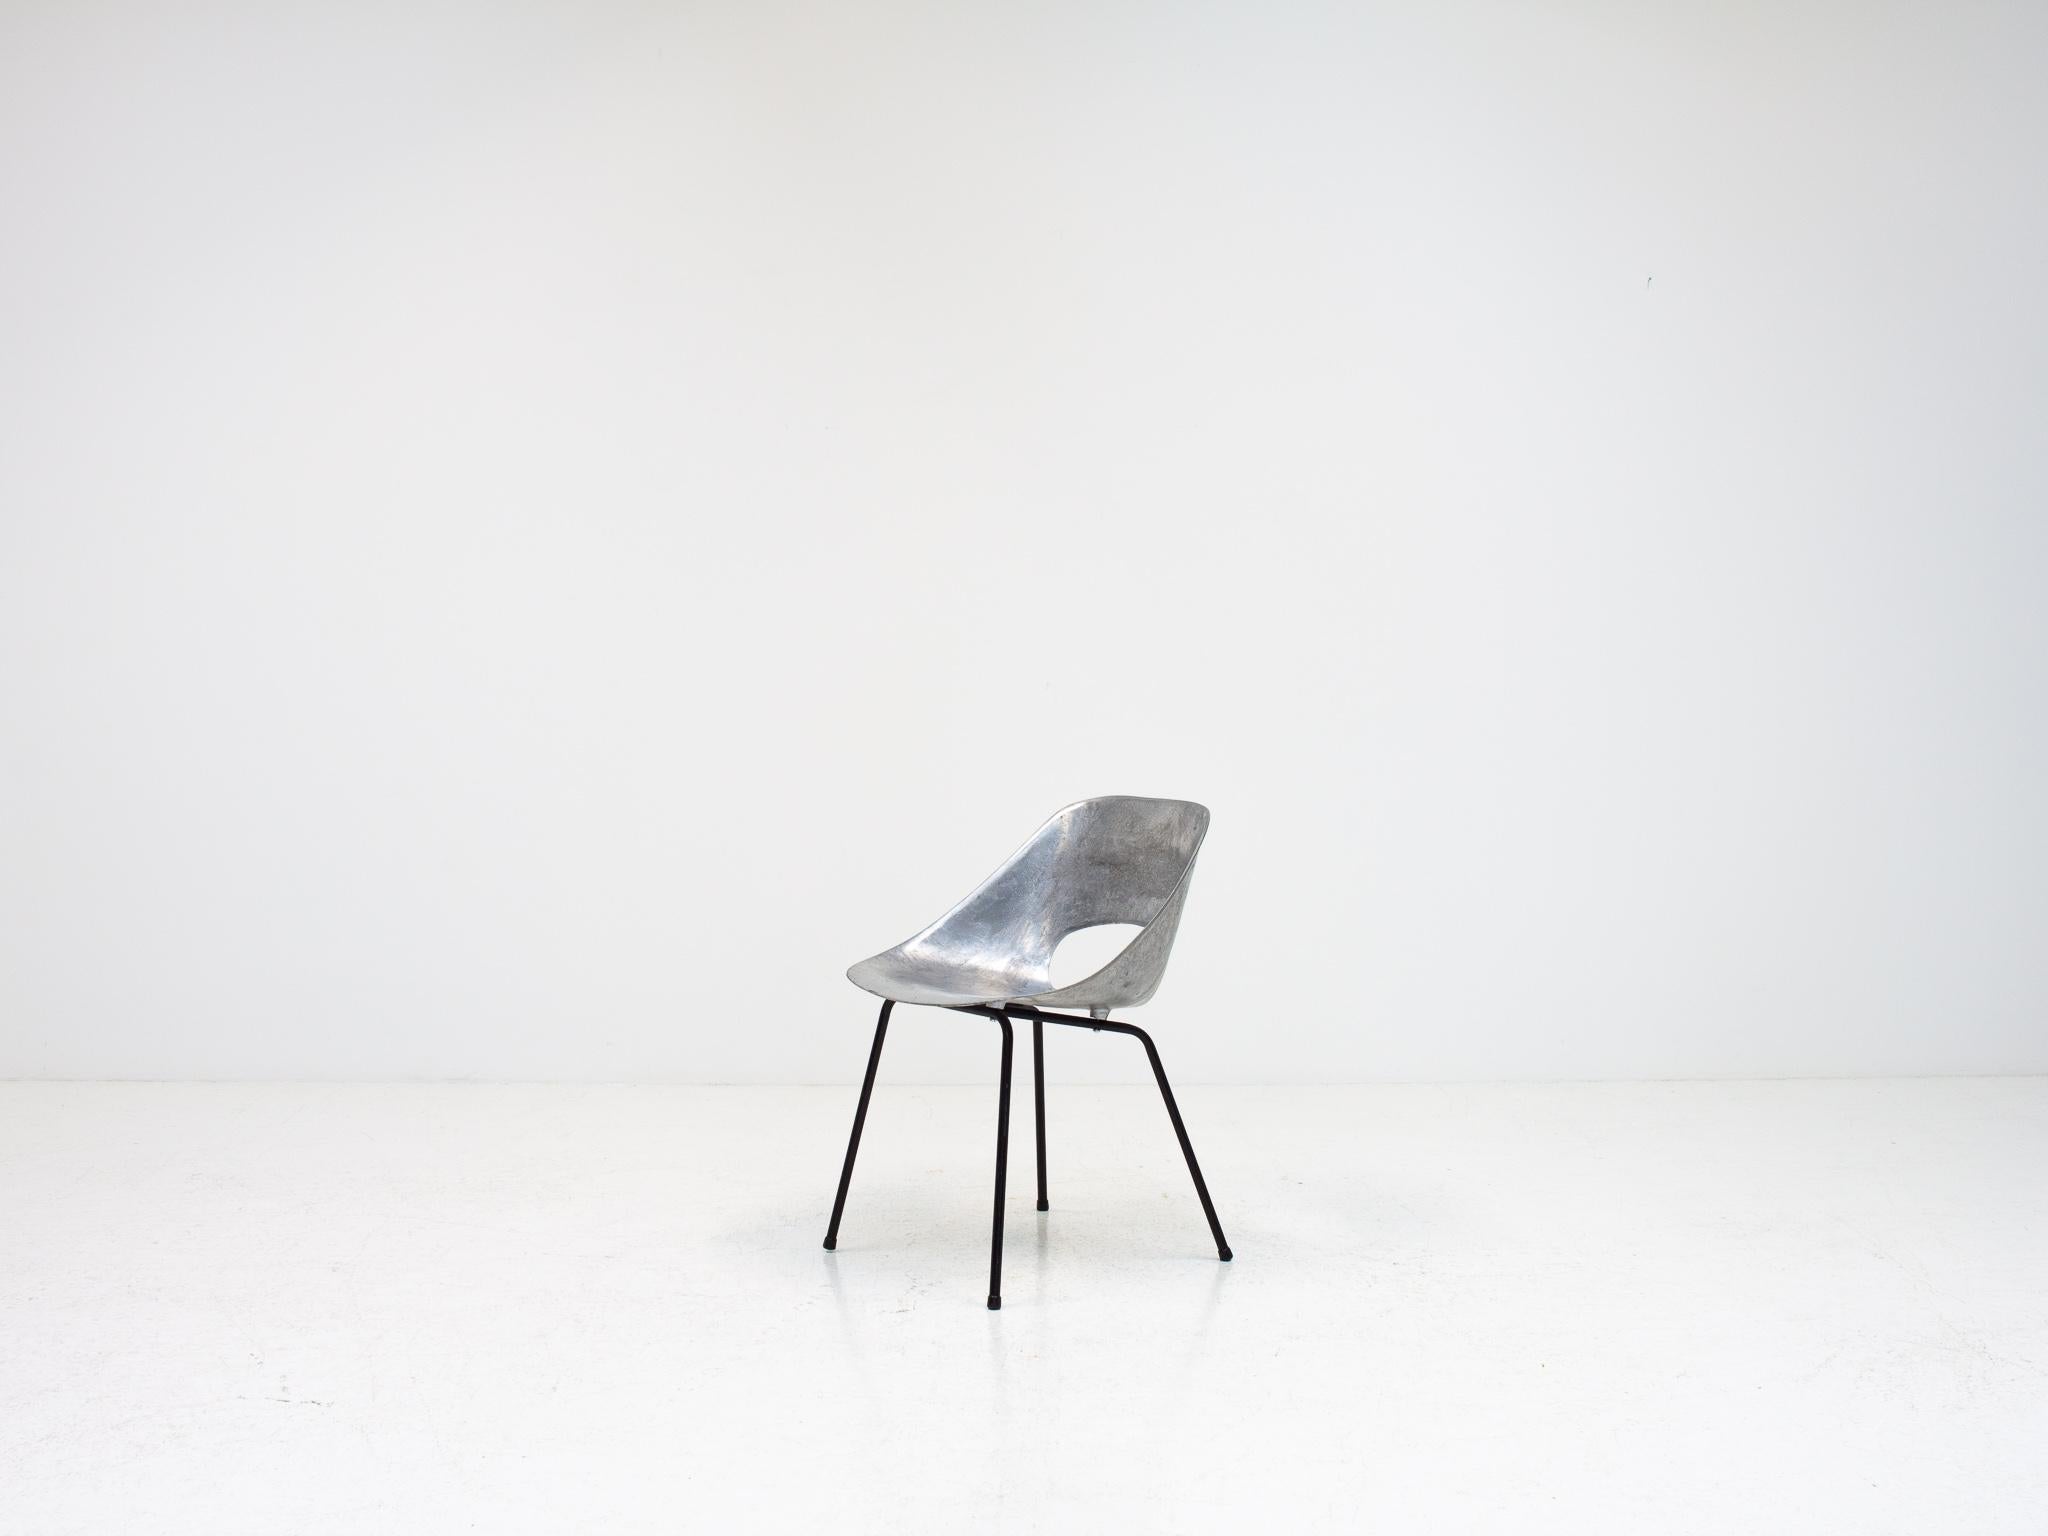 Mid-Century Modern Pierre Guariche Tulip Chair, Cast Aluminum, Steiner Meubles, Paris, 1954 For Sale